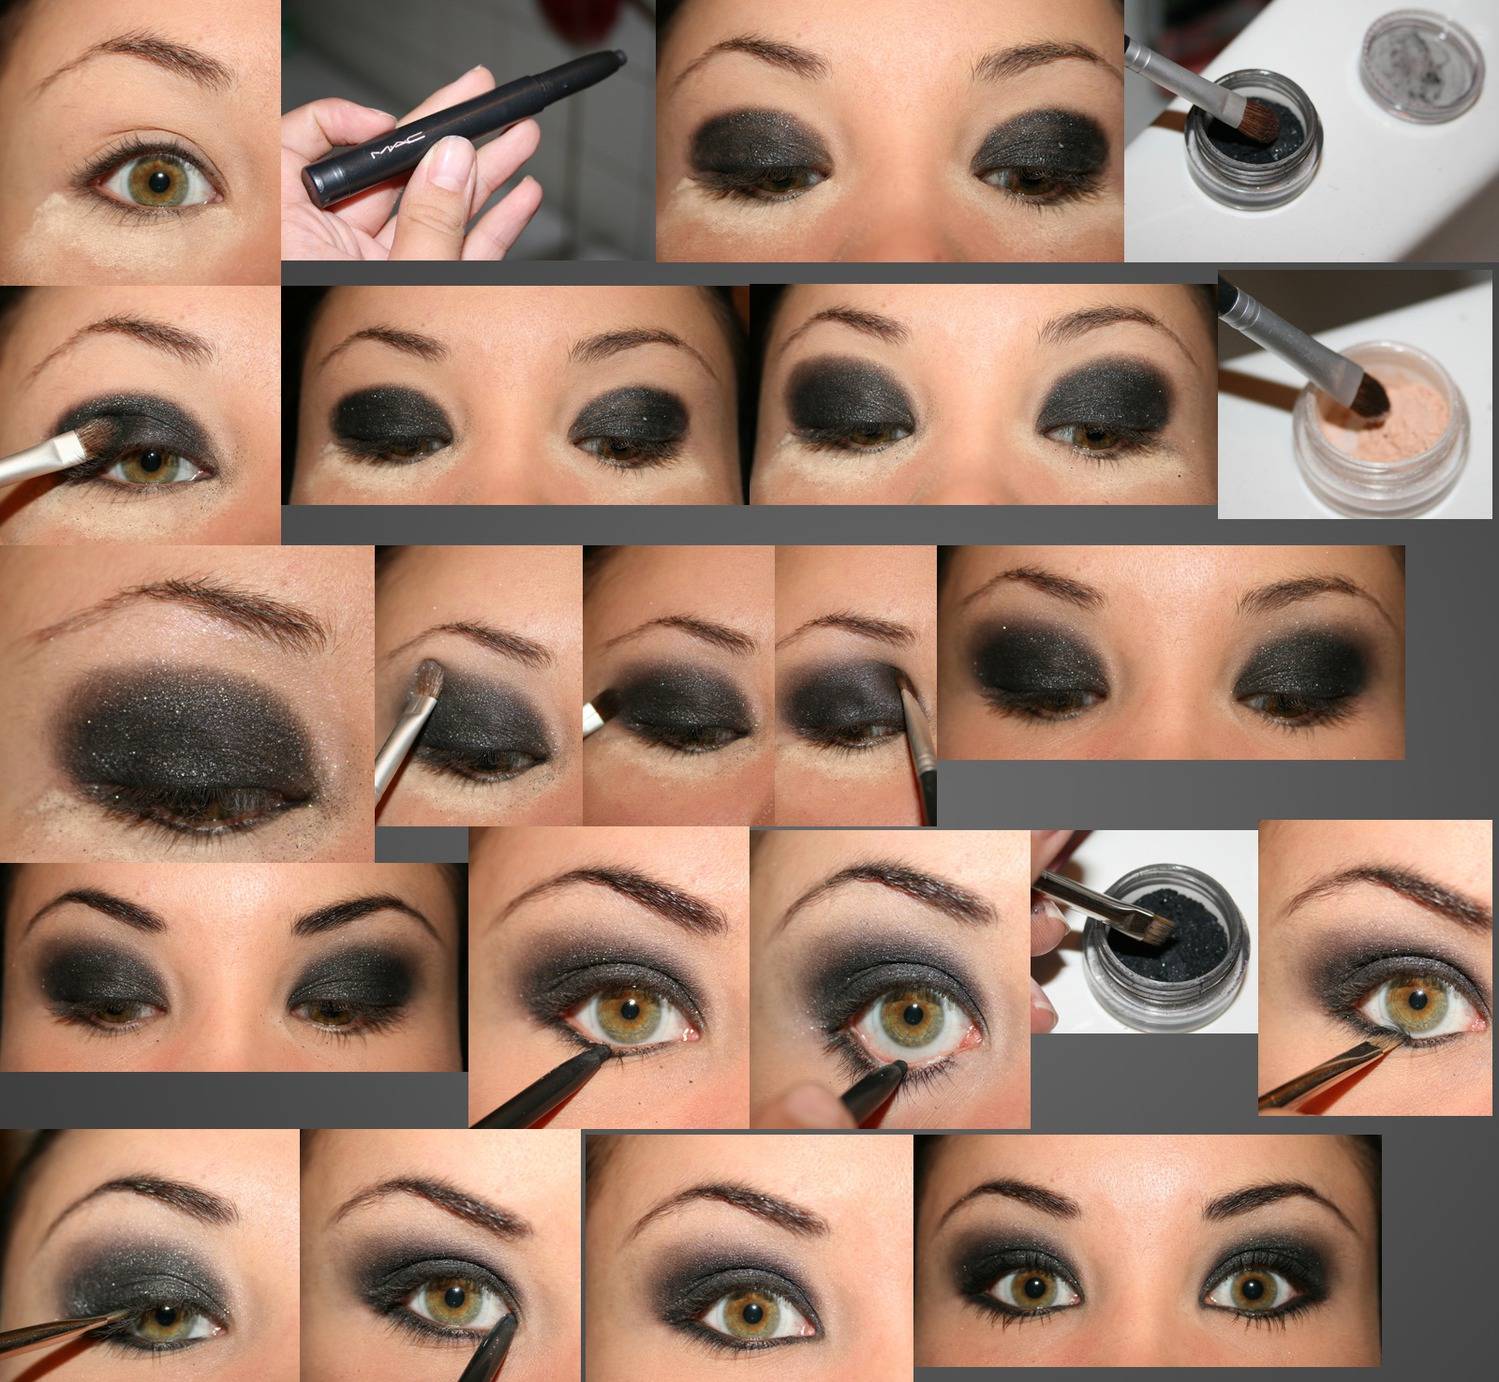 Как сделать глаза больше при помощи макияжа - шкатулка красоты